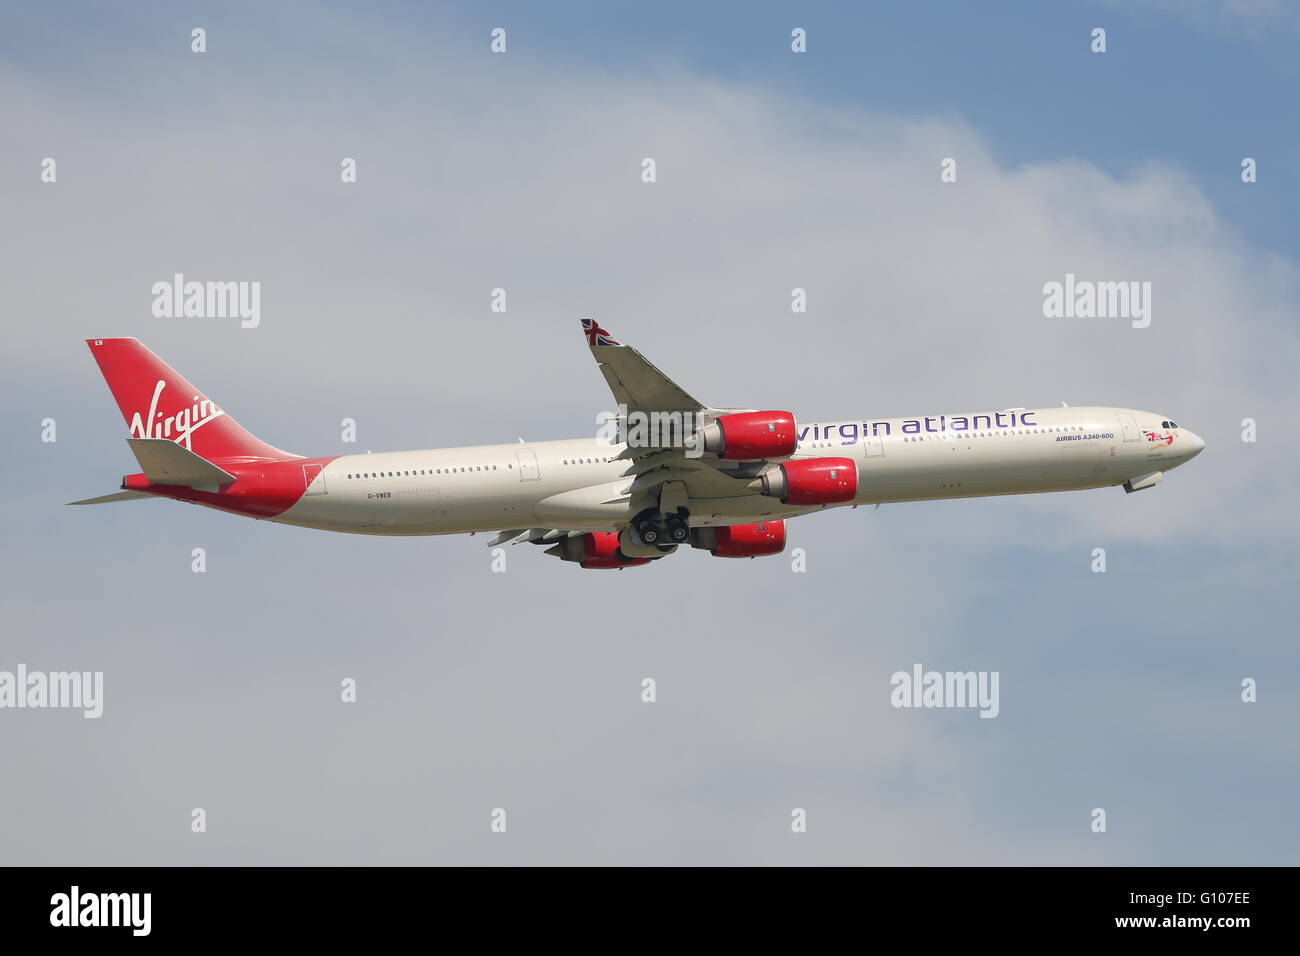 Virgin Atlantic Airbus A340-600 G-BY VWEB, au départ de l'aéroport Heathrow de Londres, UK Banque D'Images